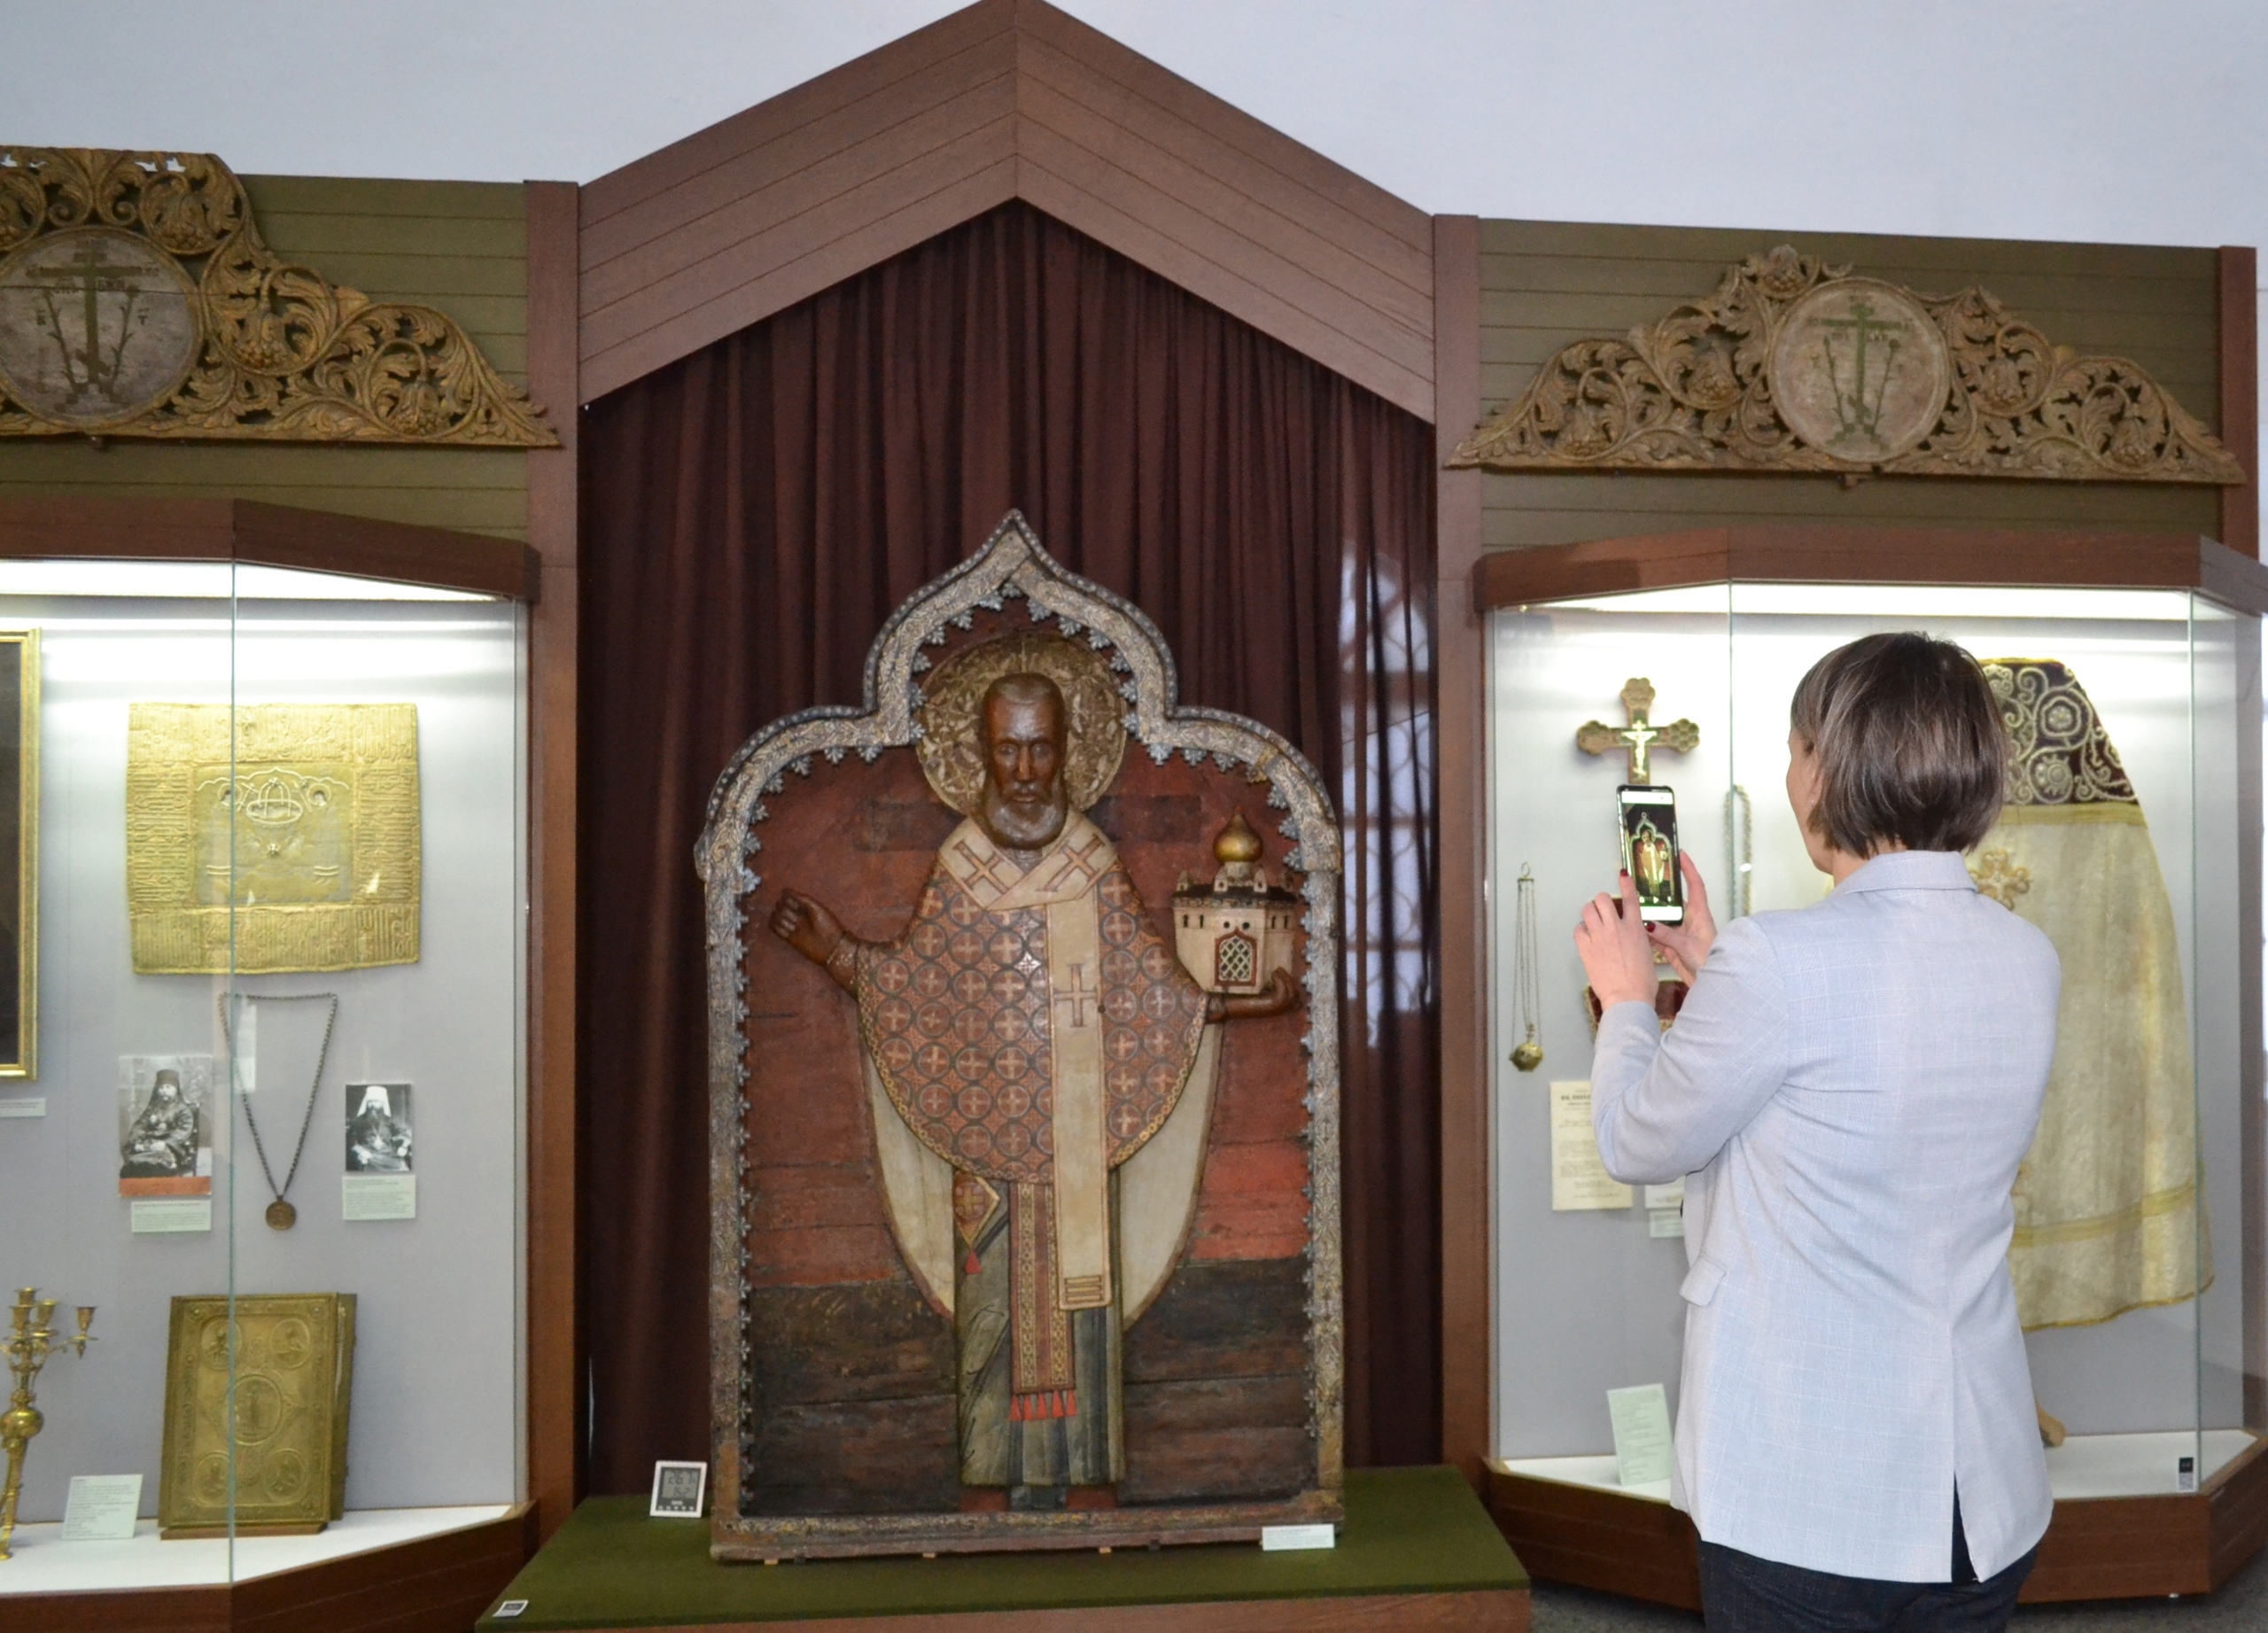 Мультимедийный гид запущен в Каргопольском музее